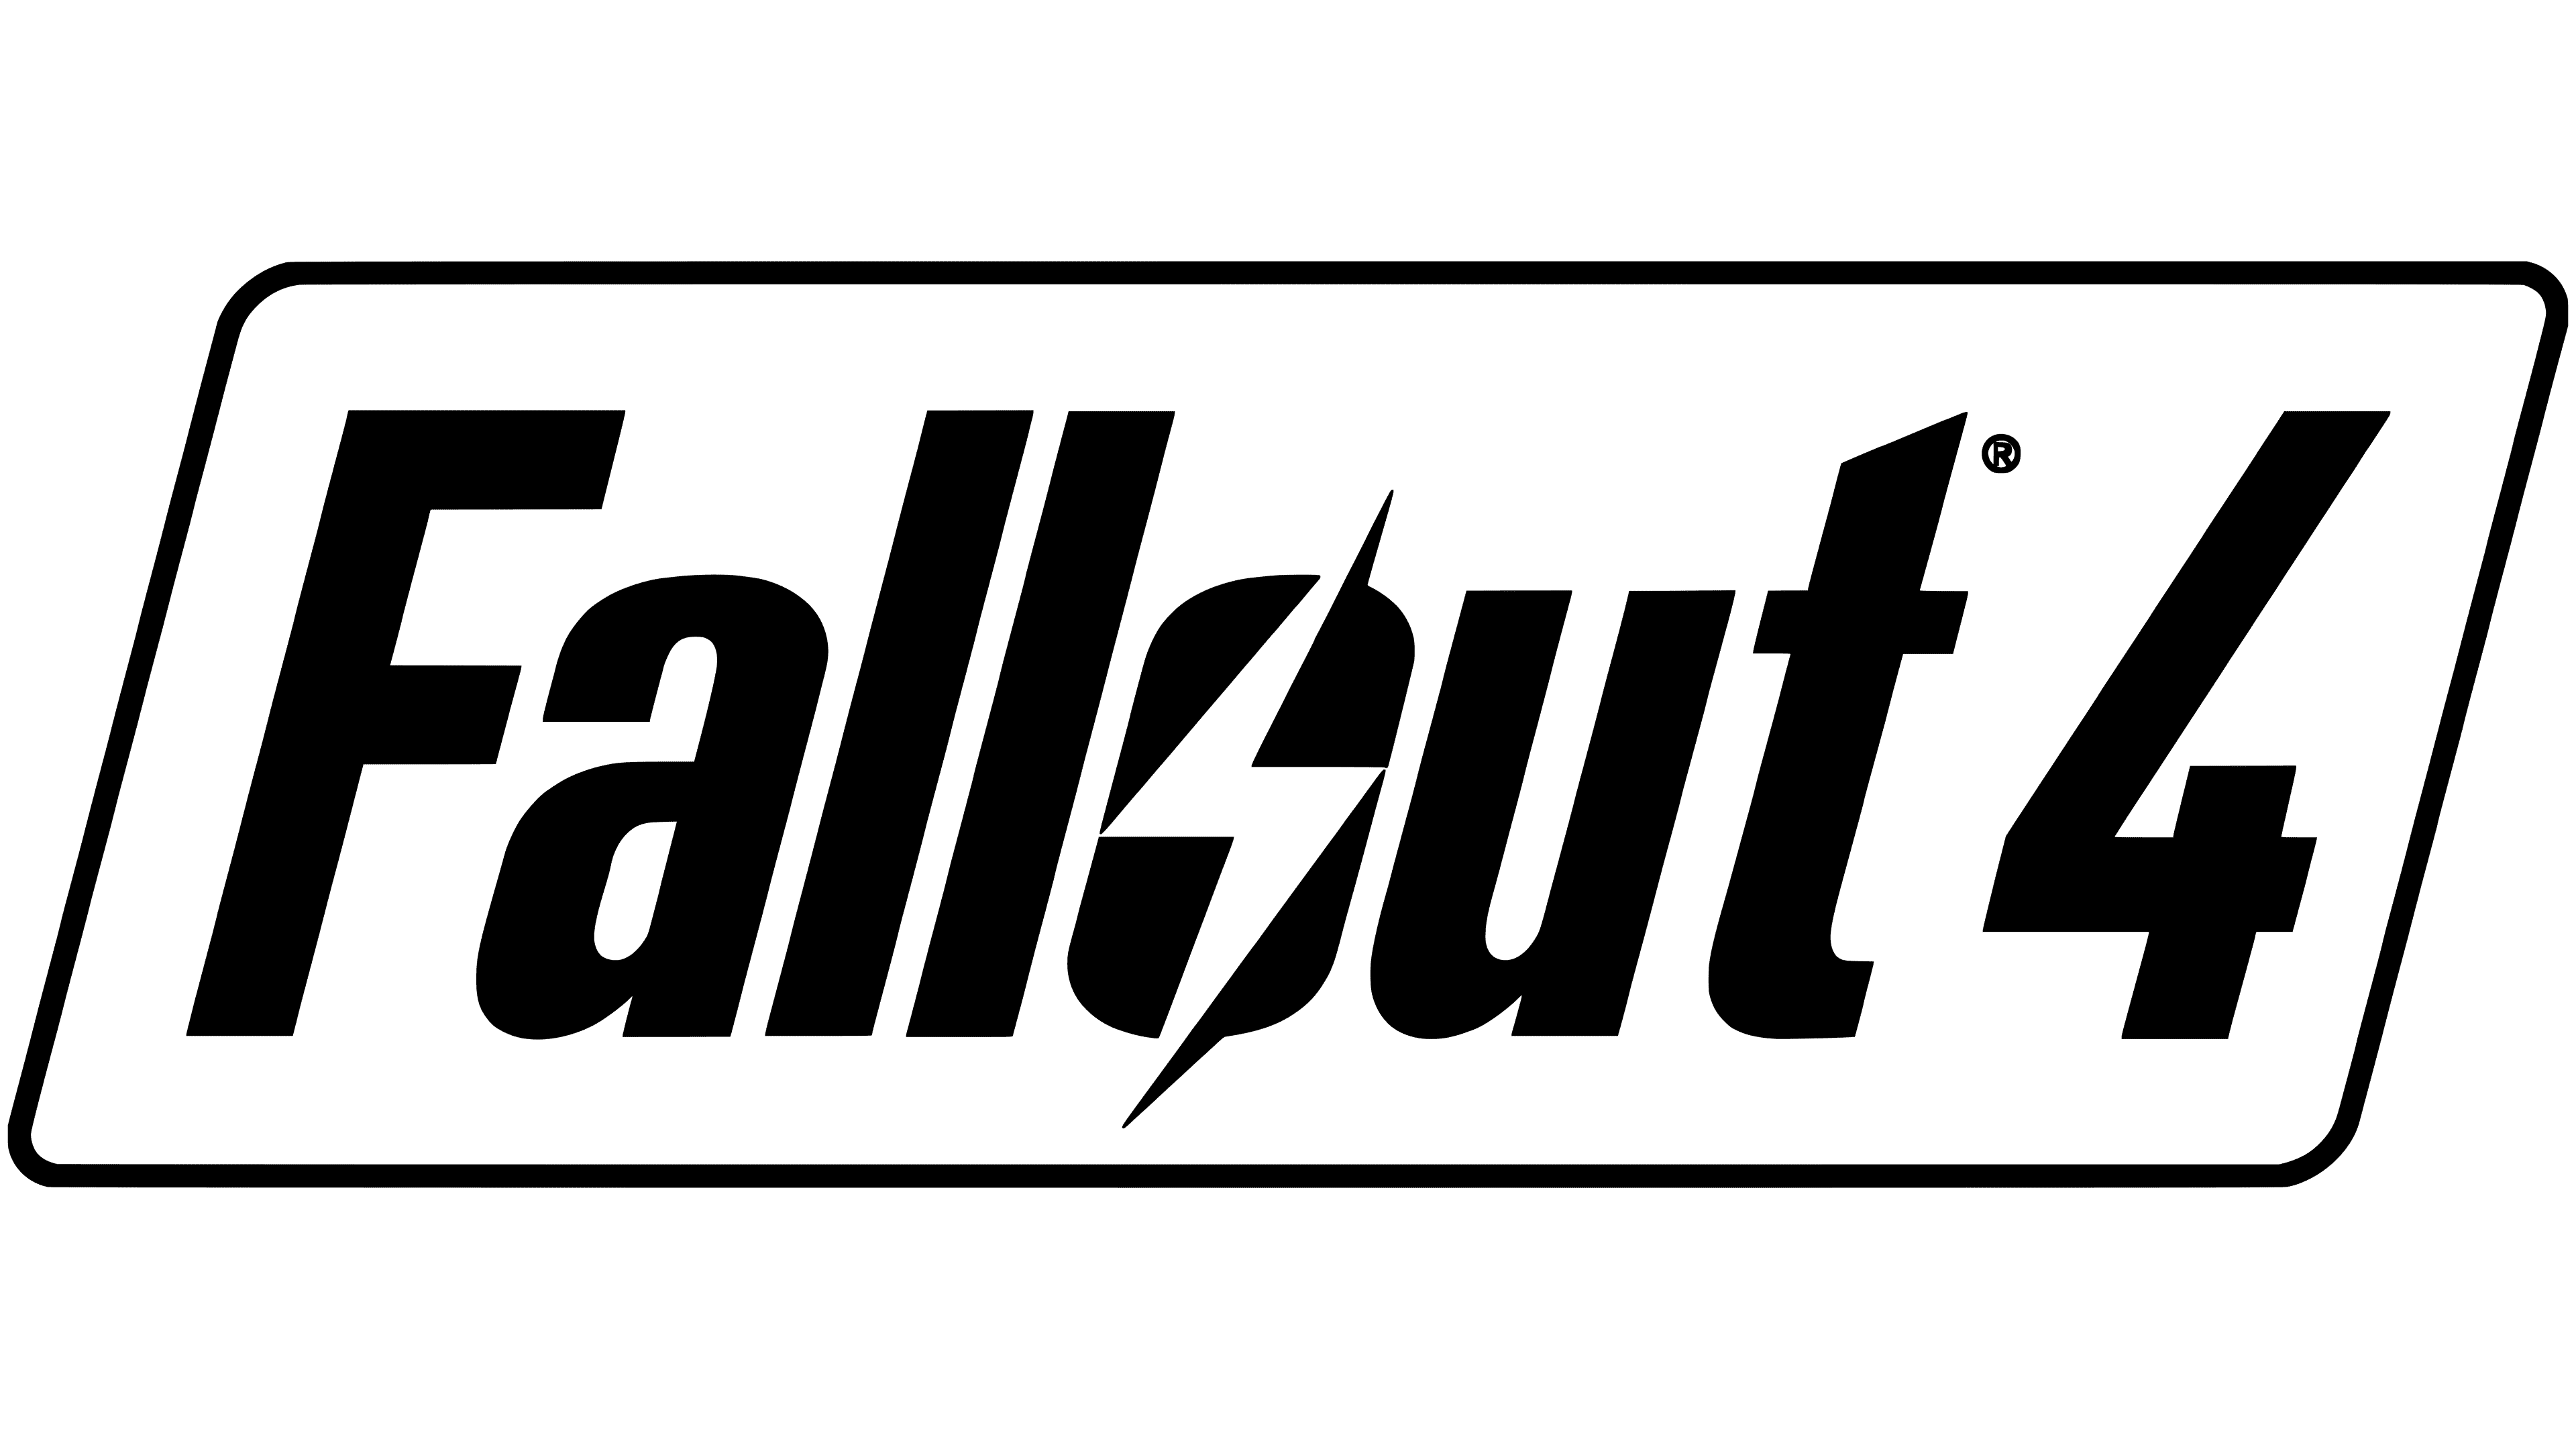 Fallout Tactics Logo